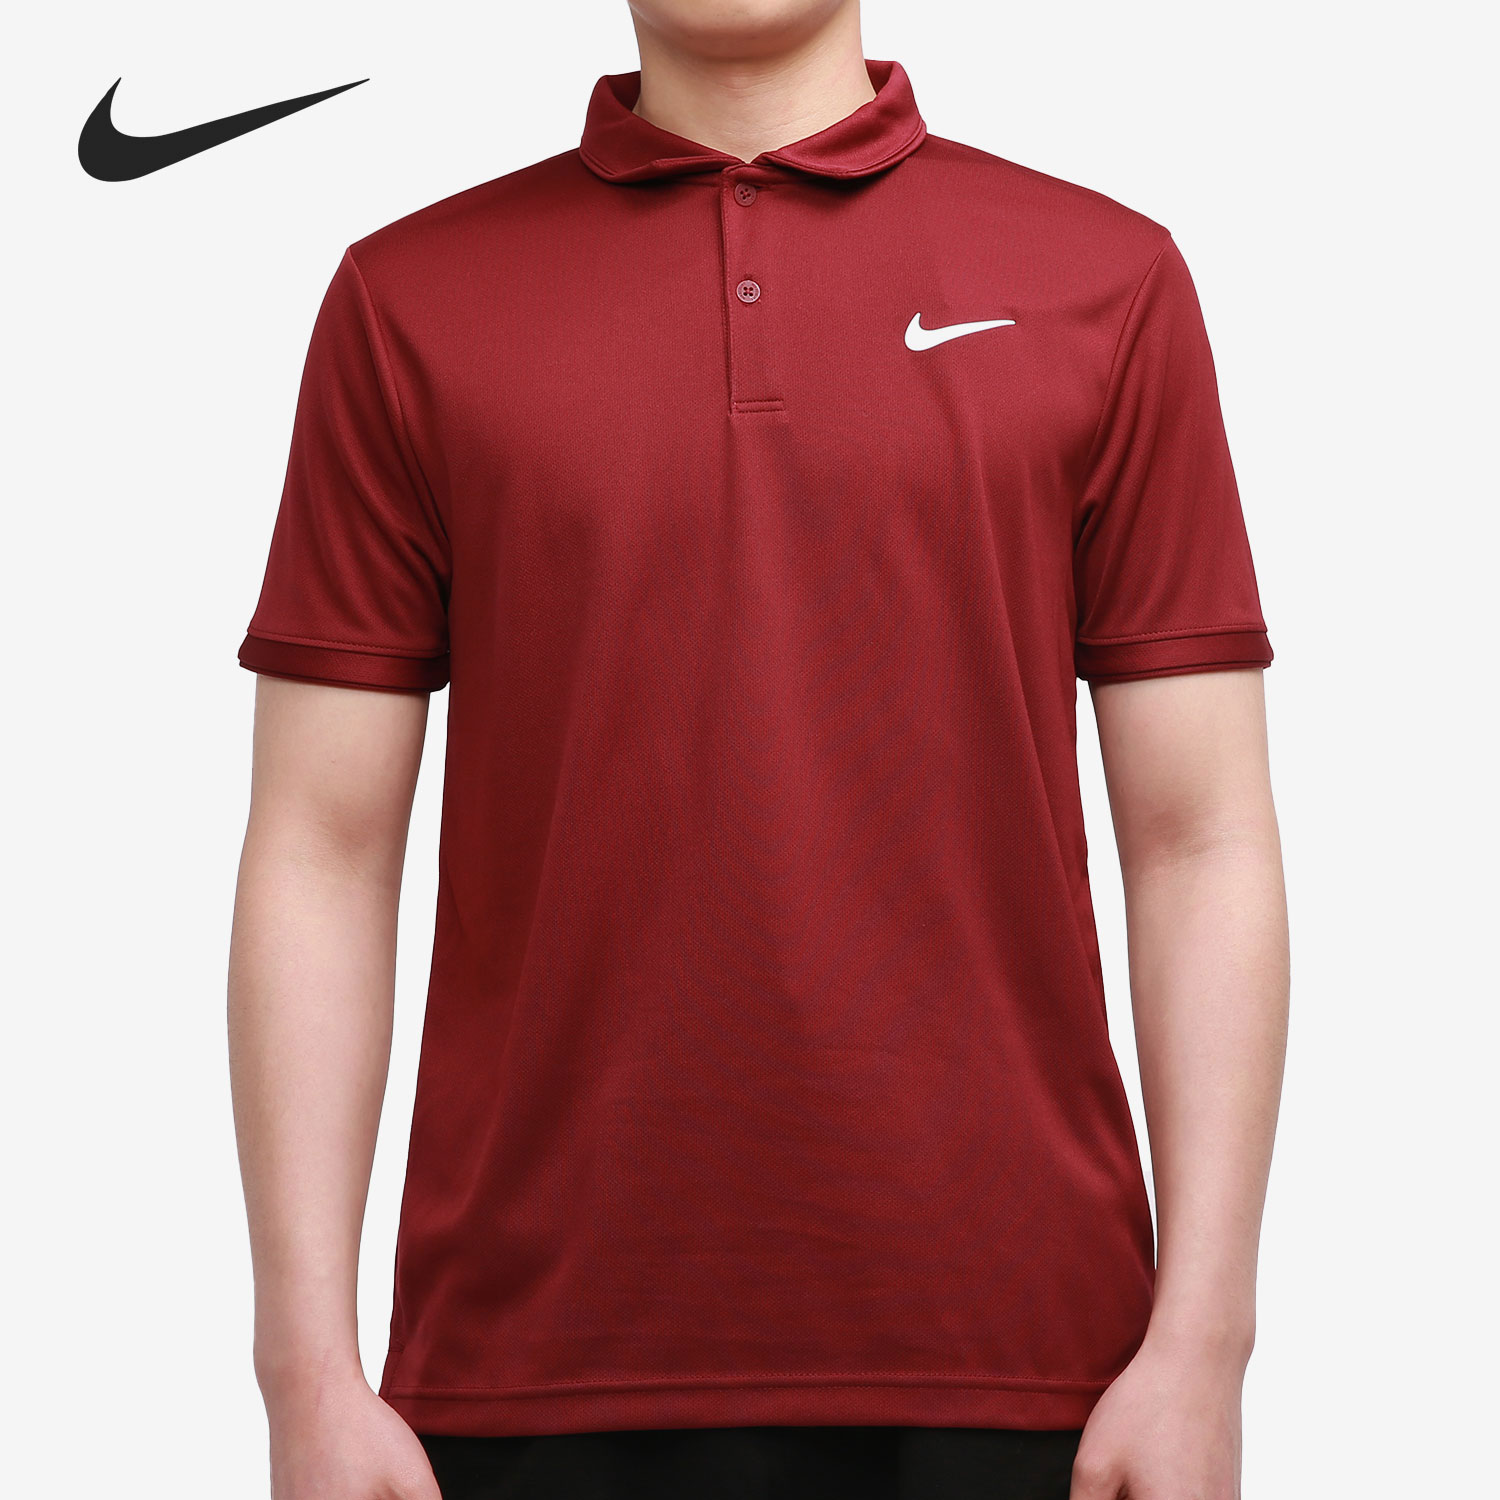 Nike/耐克正品短袖2021夏季男子运动服透气POLO衫T恤CW6851-638